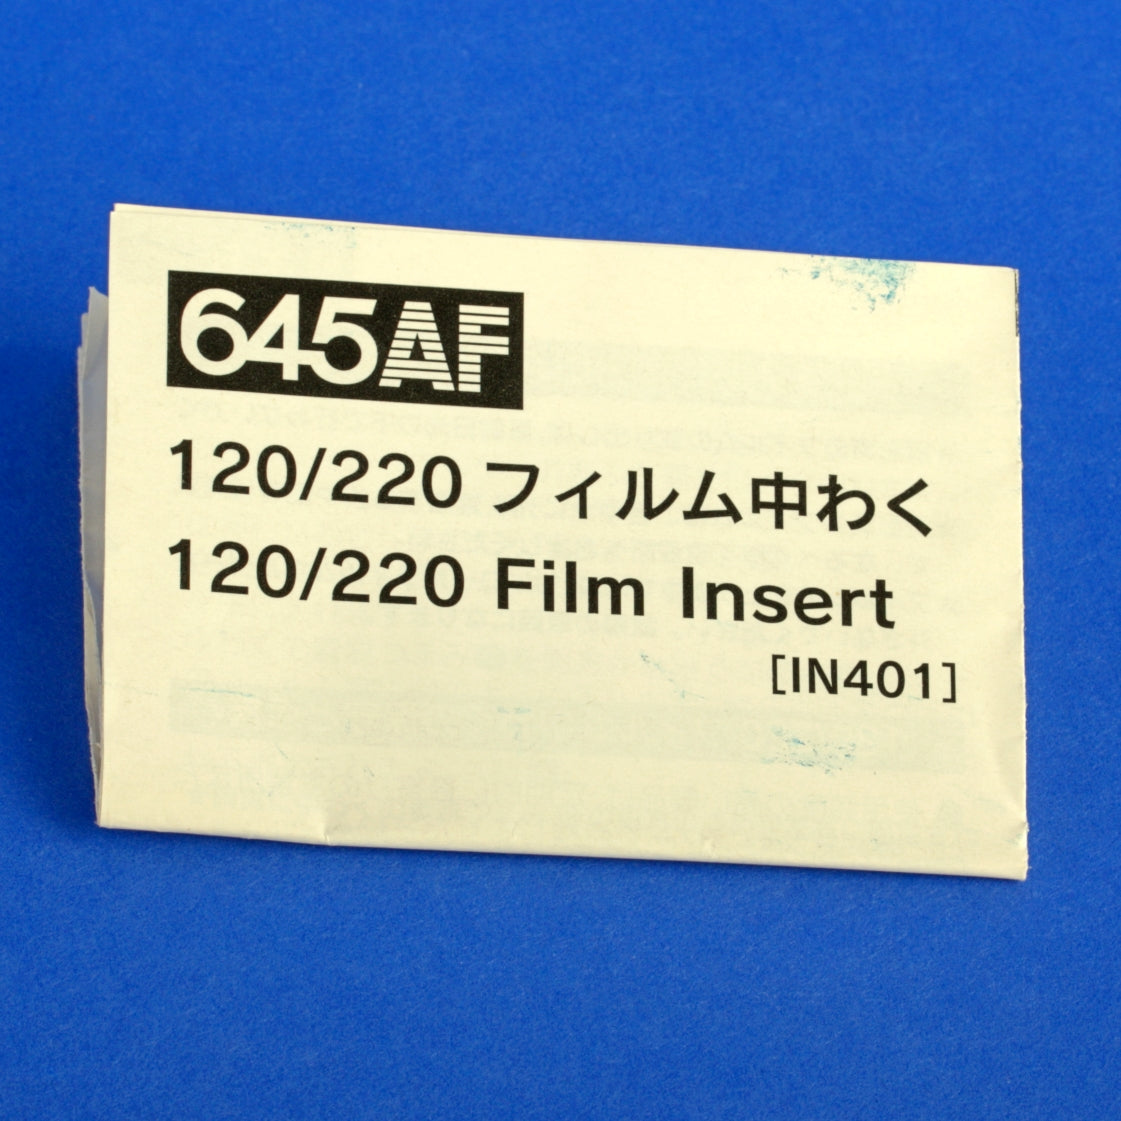 Mamiya 645 AF Film Insert IN401